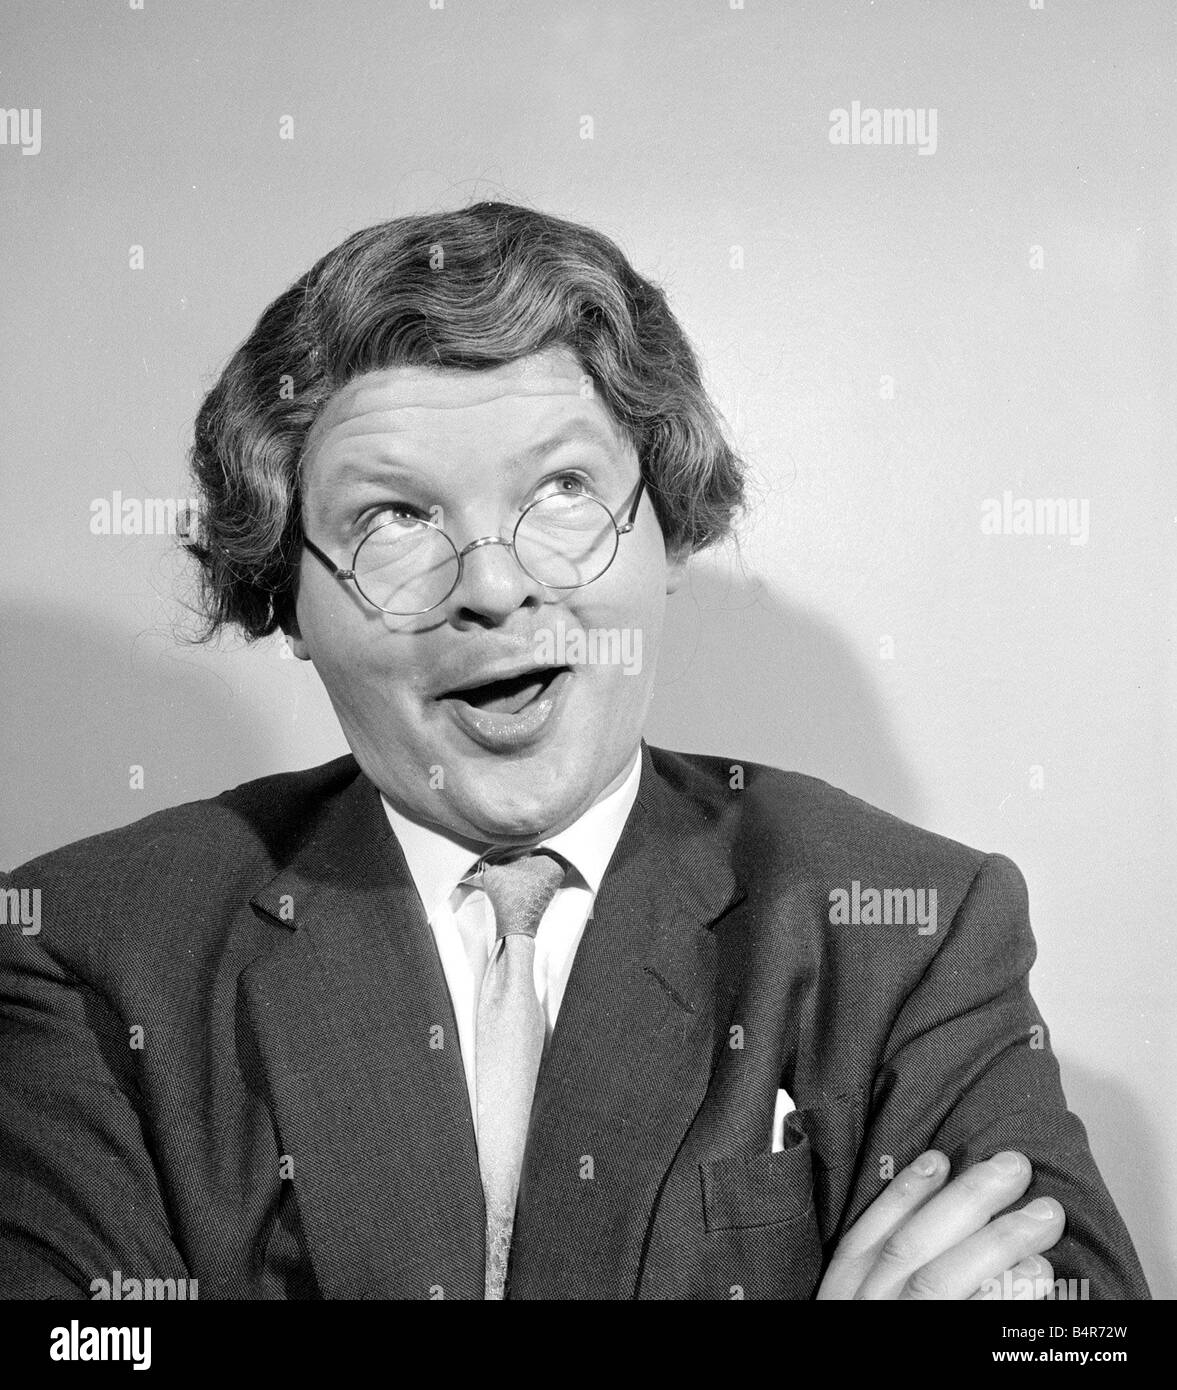 Comédien photo de Benny Hill accueil porter une perruque et de lunettes de mai 1958 Banque D'Images